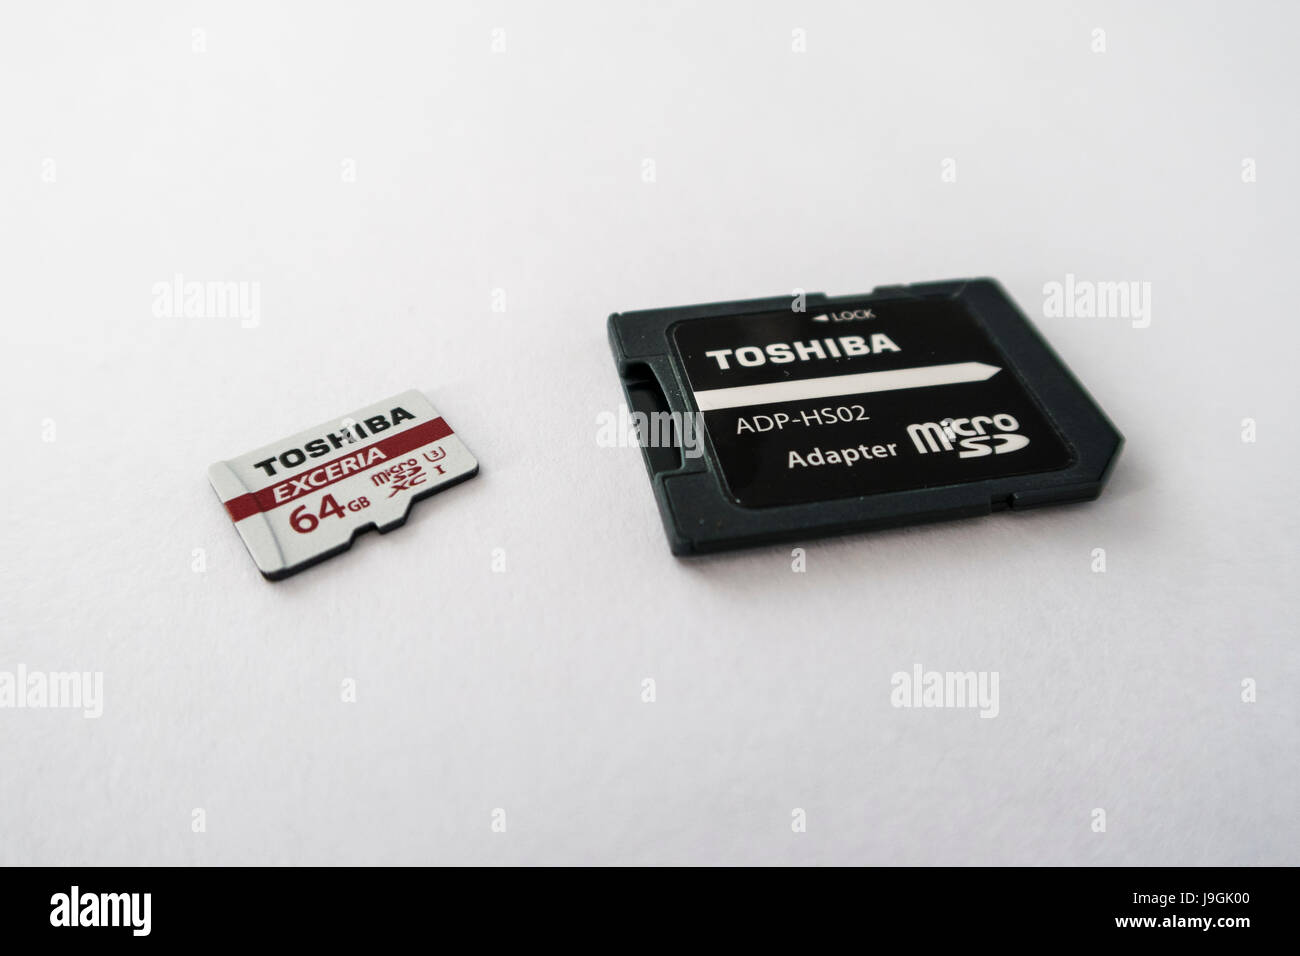 Toshiba Exceria XC microSD carte mémoire avec une capacité de 64 Go, et une carte microSD d'adaptateur pour carte SD sur fond blanc. Banque D'Images